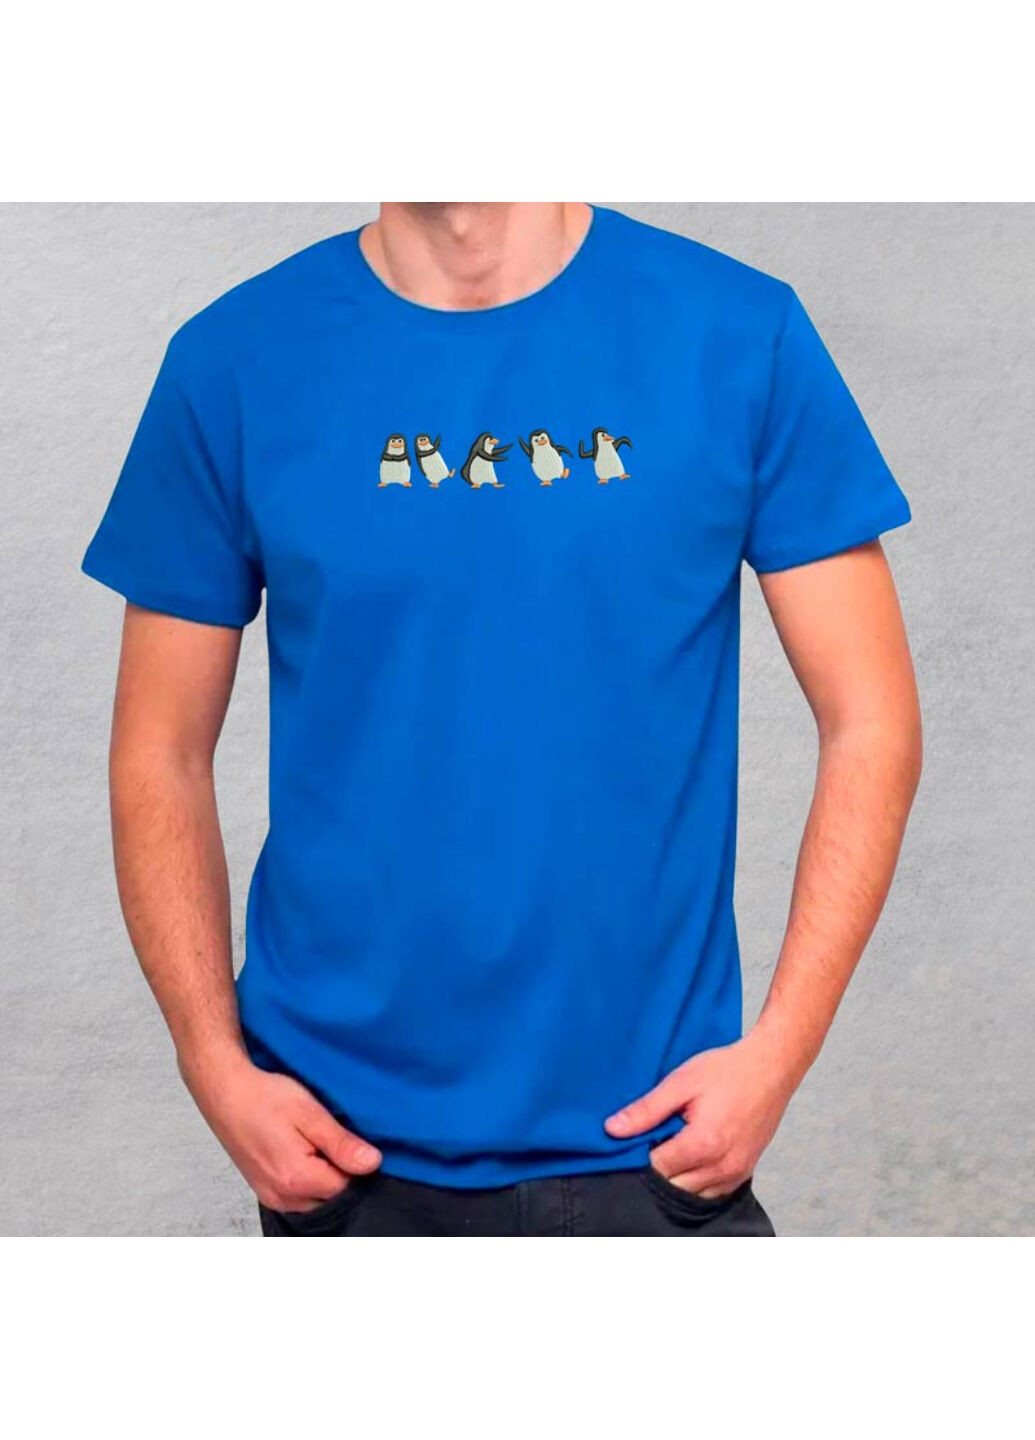 Синяя футболка с вышивкой пингвинов 01-3 мужская синий xl No Brand